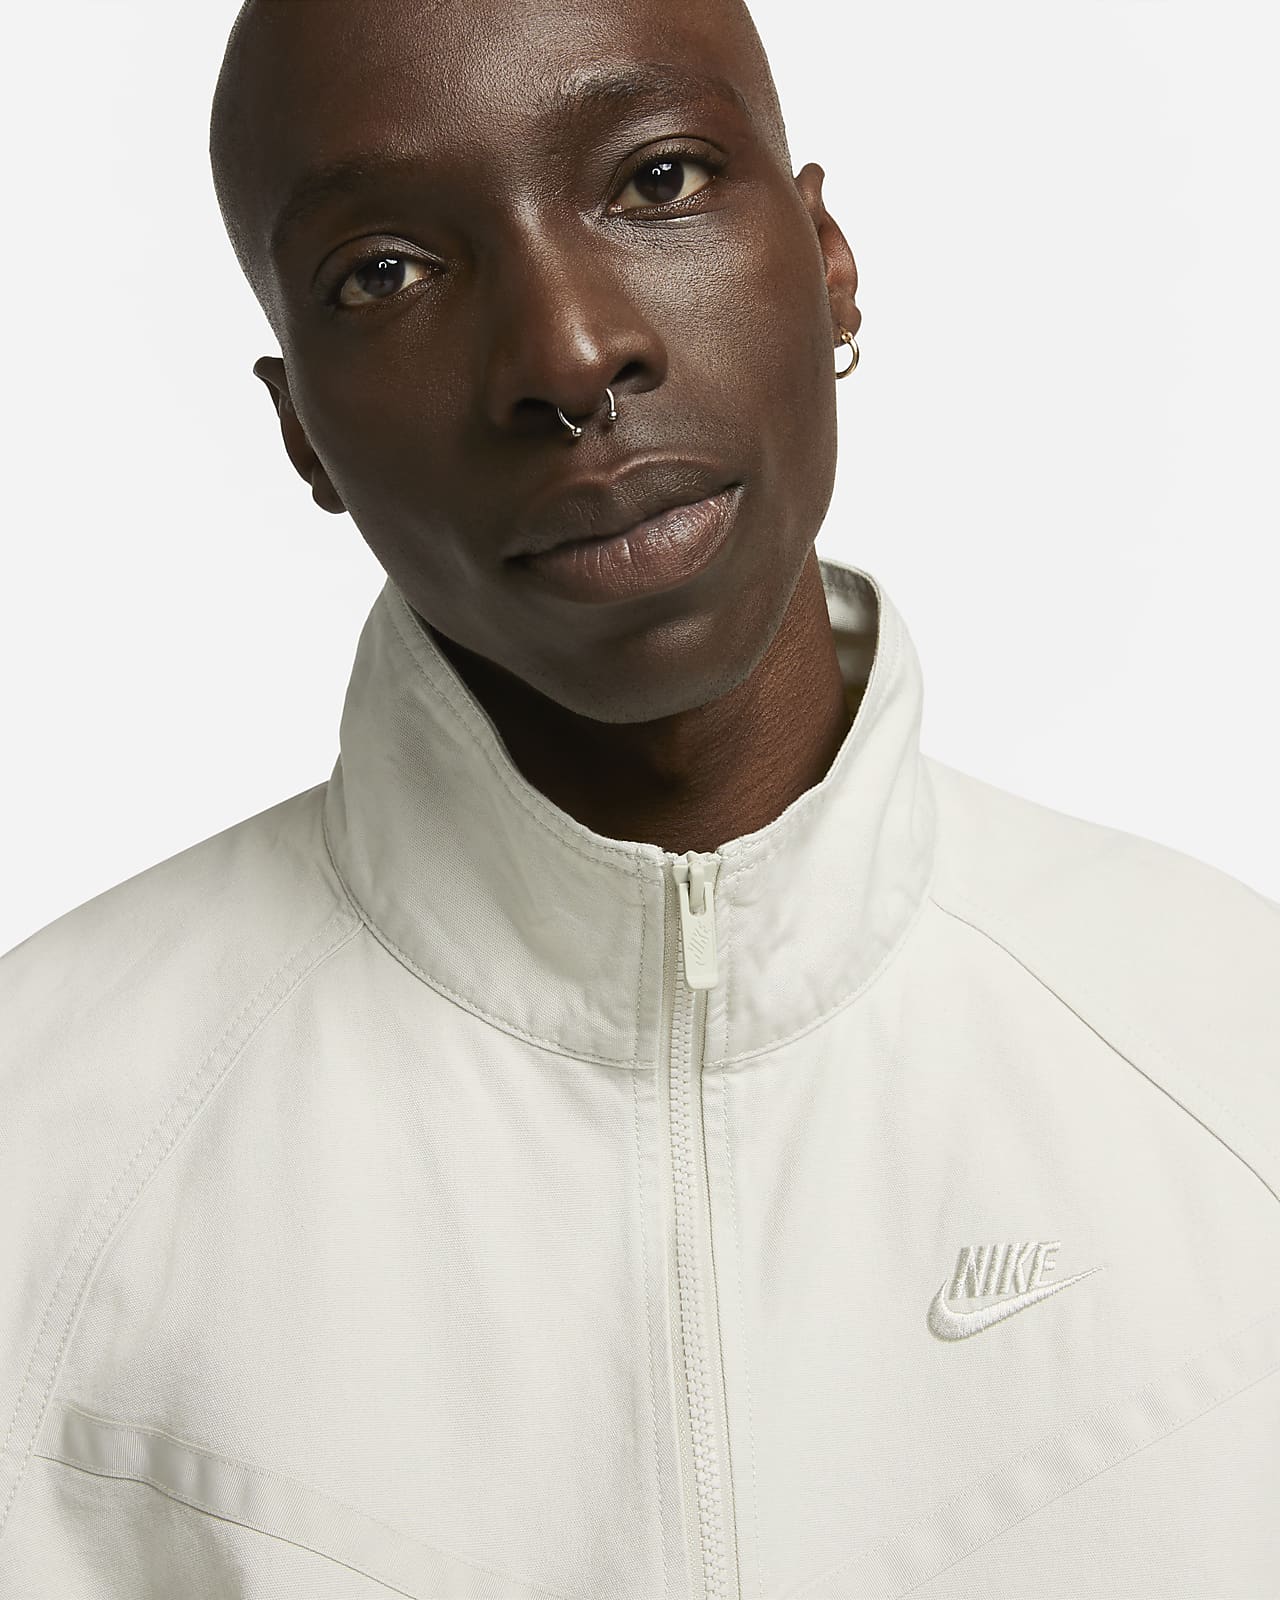 Nike Windrunner Men's Canvas Jacket.